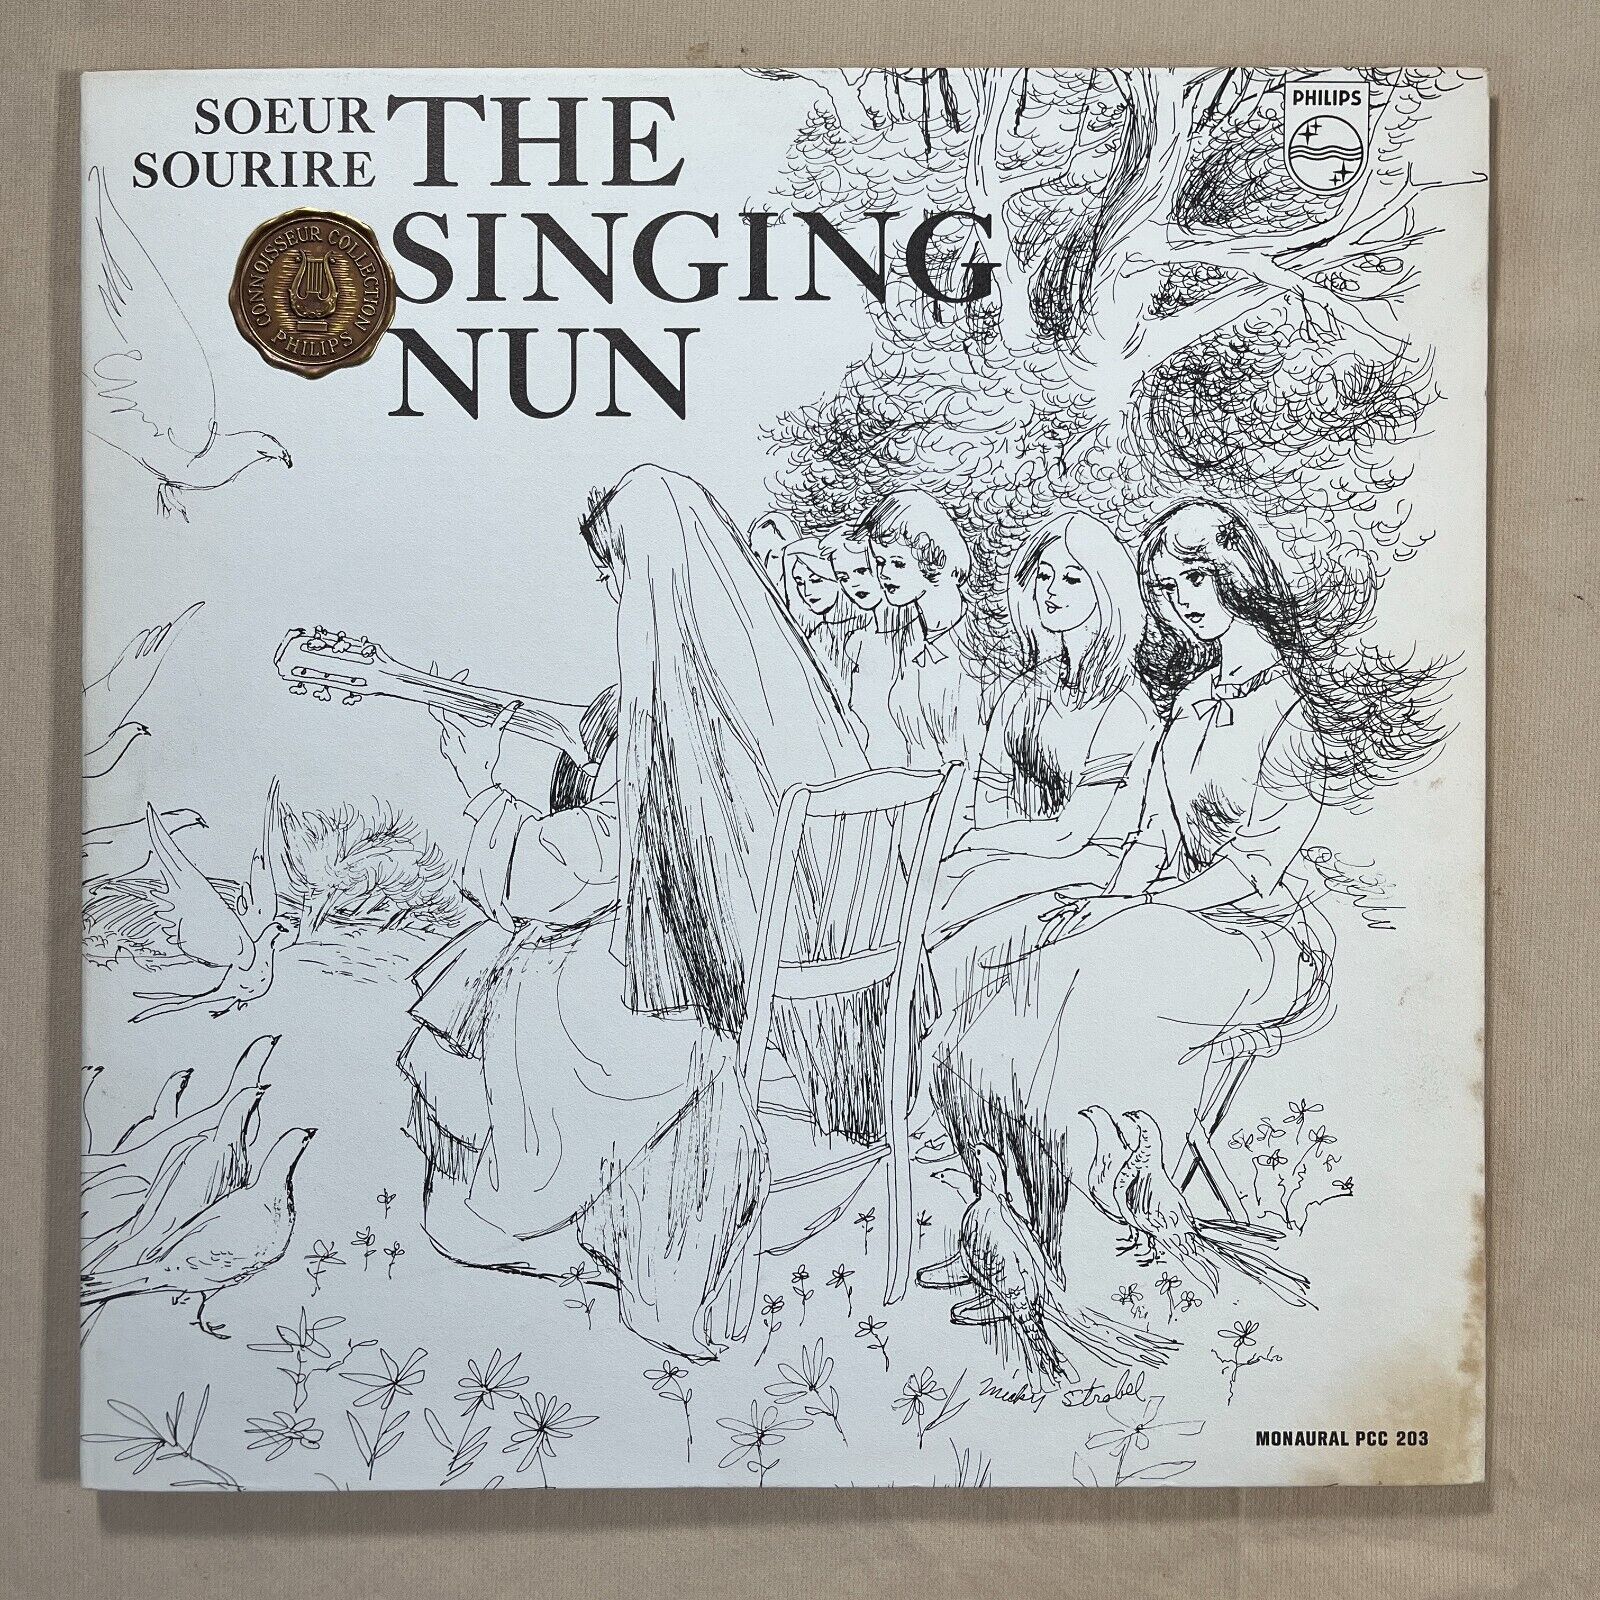 SOEUR SOURIRE The Singing Nun 1963 Complete Vinyl LP + Art Philips PCC-203 - VG+